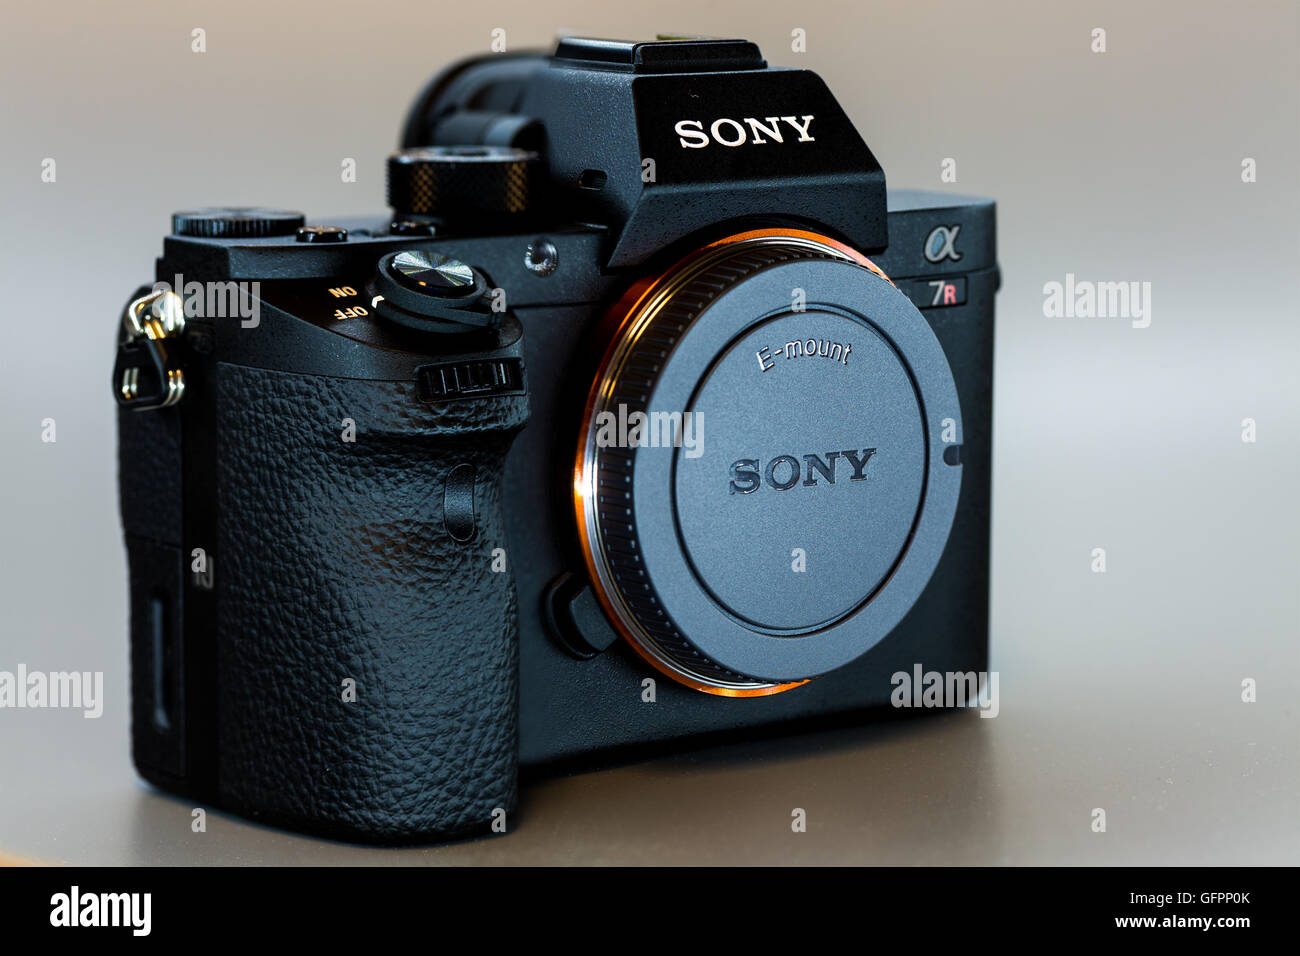 19. 12. 2015, Berlino, Germania, Sony Alpha a7R II ILCE-7RM2 Mirrorless fotocamera digitale (solo corpo) senza obiettivo. Foto Stock